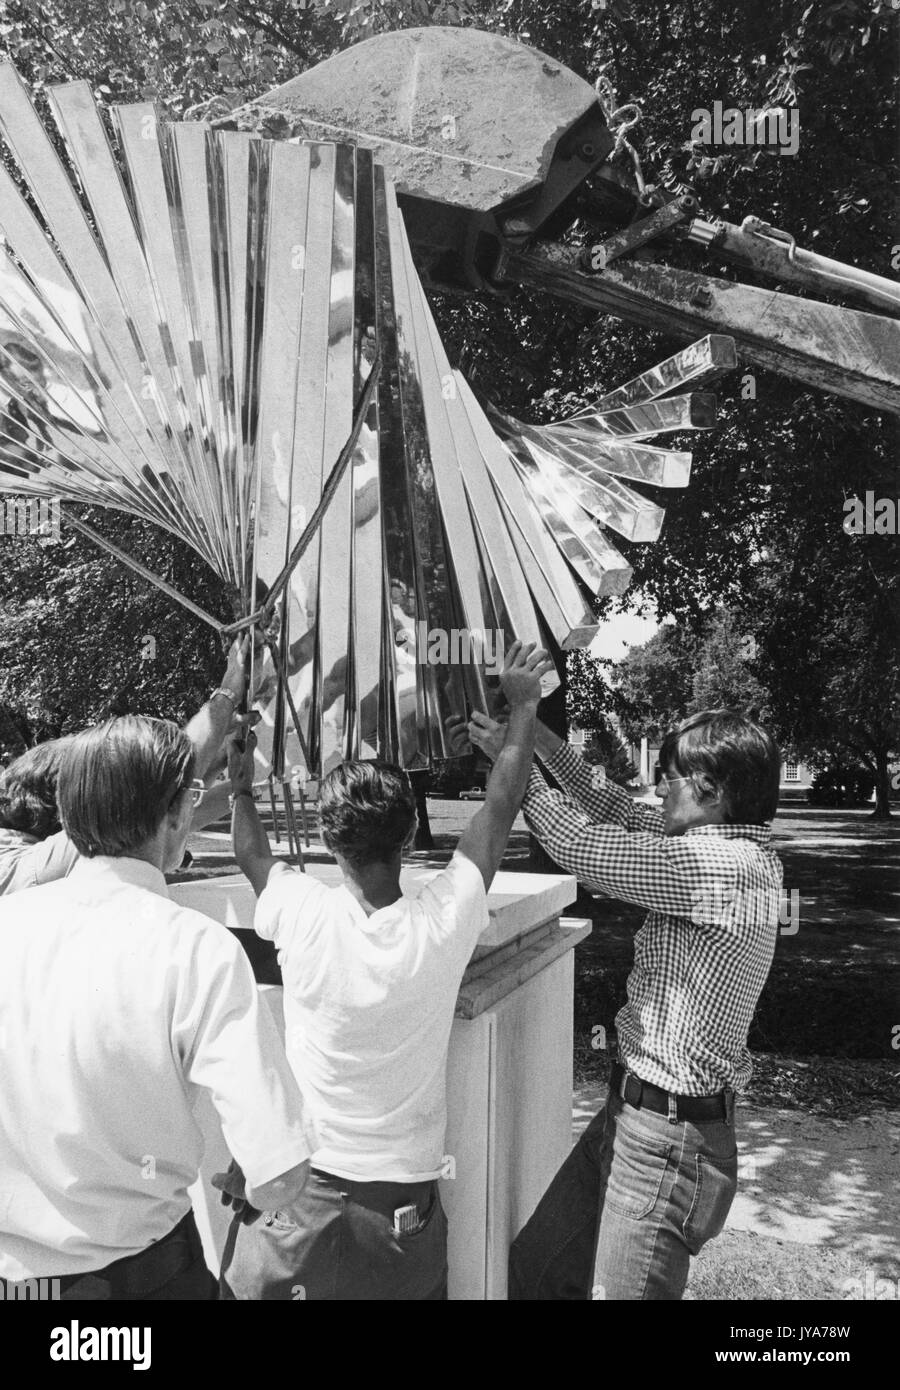 Costruzione della scultura centenaria, creata dallo scultore David Brown per celebrare il centesimo anniversario della fondazione della Johns Hopkins University nel campus di Homewood dell'Università di Baltimora, Maryland. 1976. Foto Stock